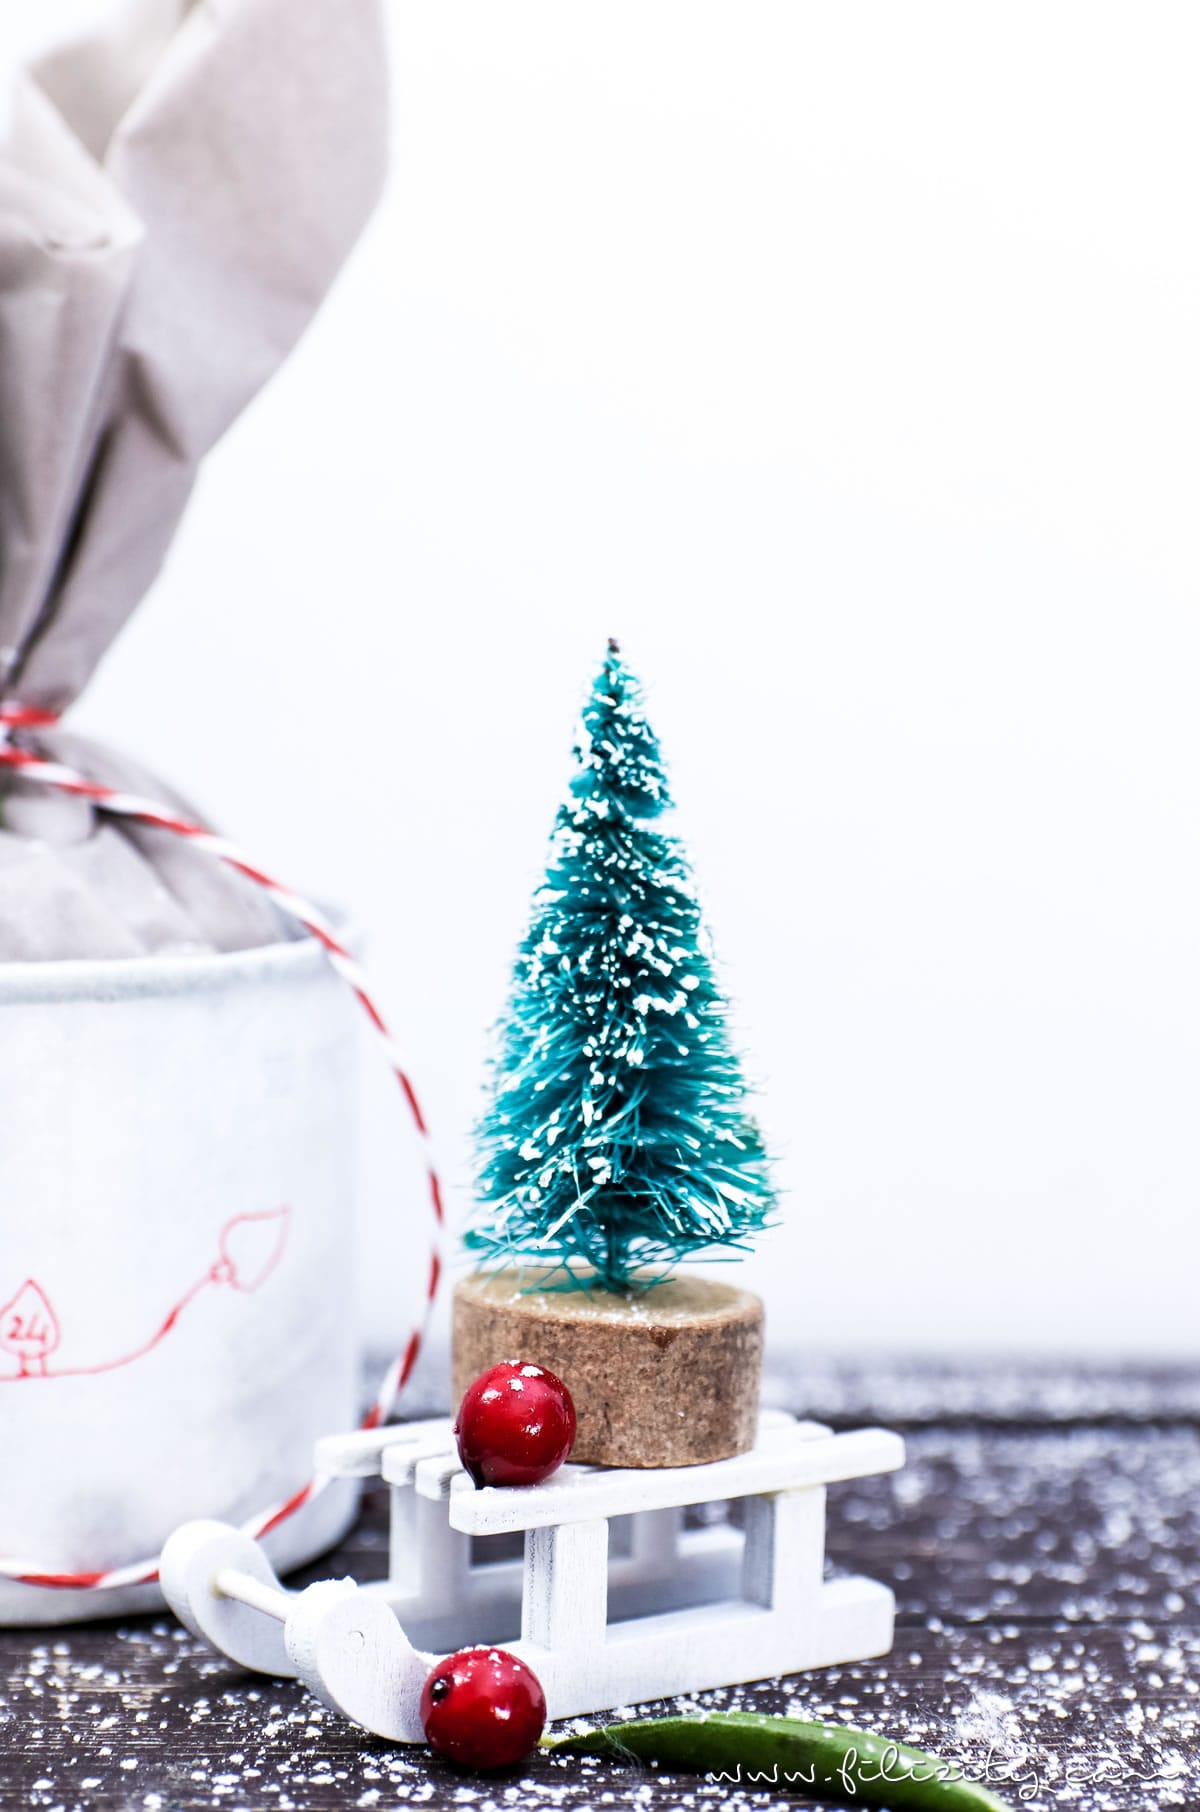 Weihnachts-DIY: Adventskalender basteln aus alten Dosen - Schönes Recycling/Upcycling-Projekt | Filizity.com | DIY-Blog aus dem Rheinland #weihnachten #adventskalender #recycling #upcycling